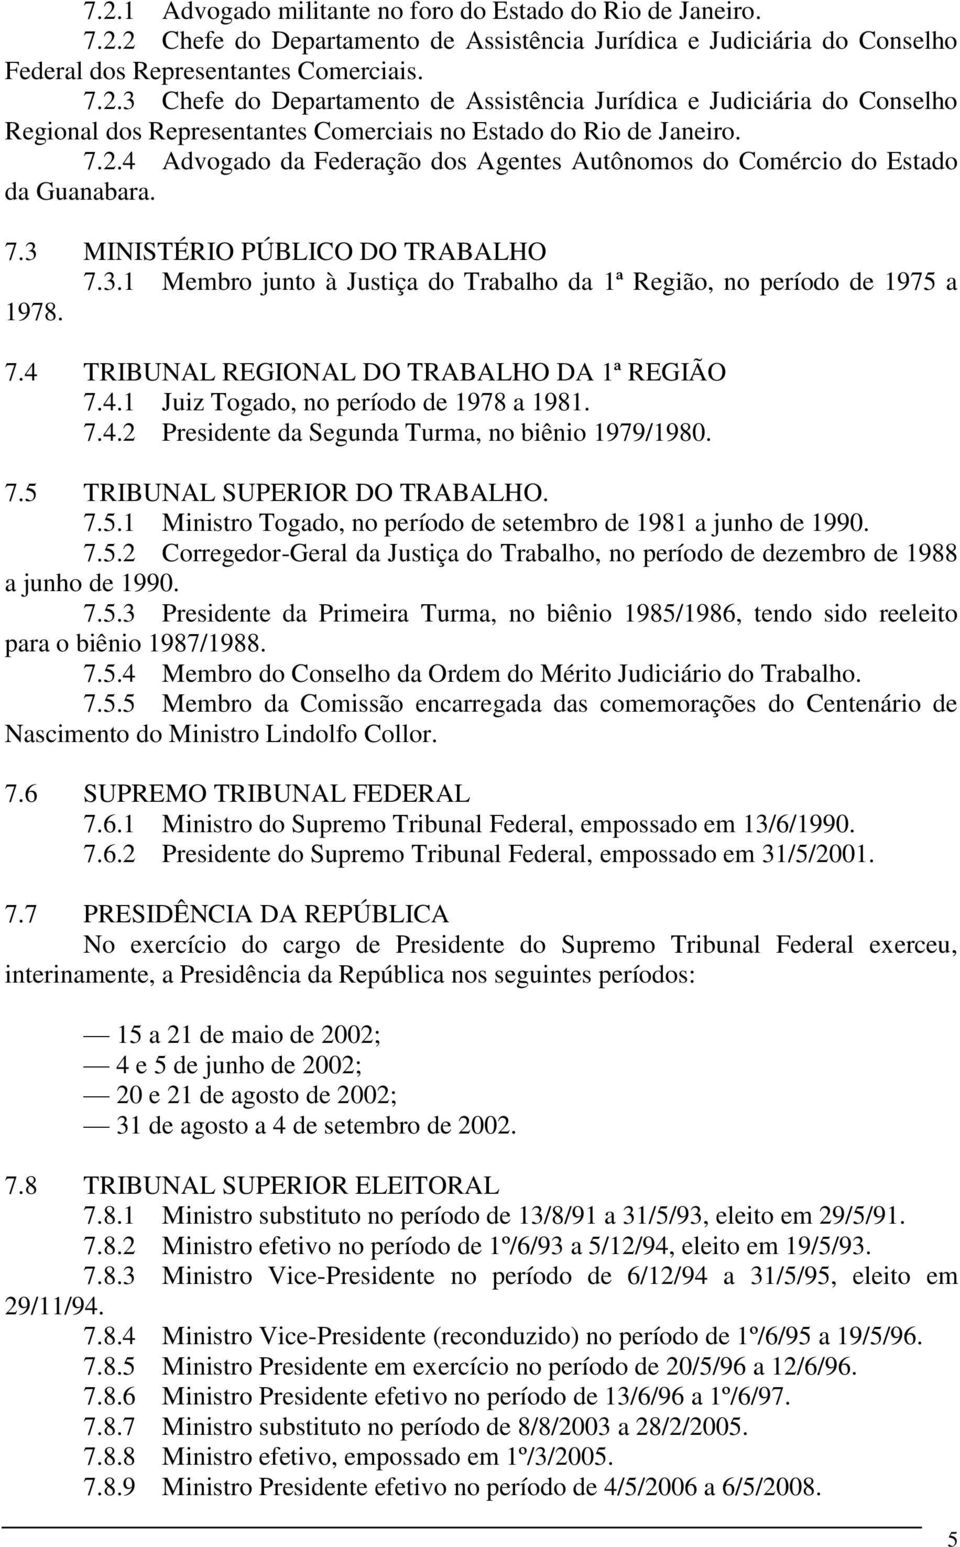 7.4 TRIBUNAL REGIONAL DO TRABALHO DA 1ª REGIÃO 7.4.1 Juiz Togado, no período de 1978 a 1981. 7.4.2 Presidente da Segunda Turma, no biênio 1979/1980. 7.5 